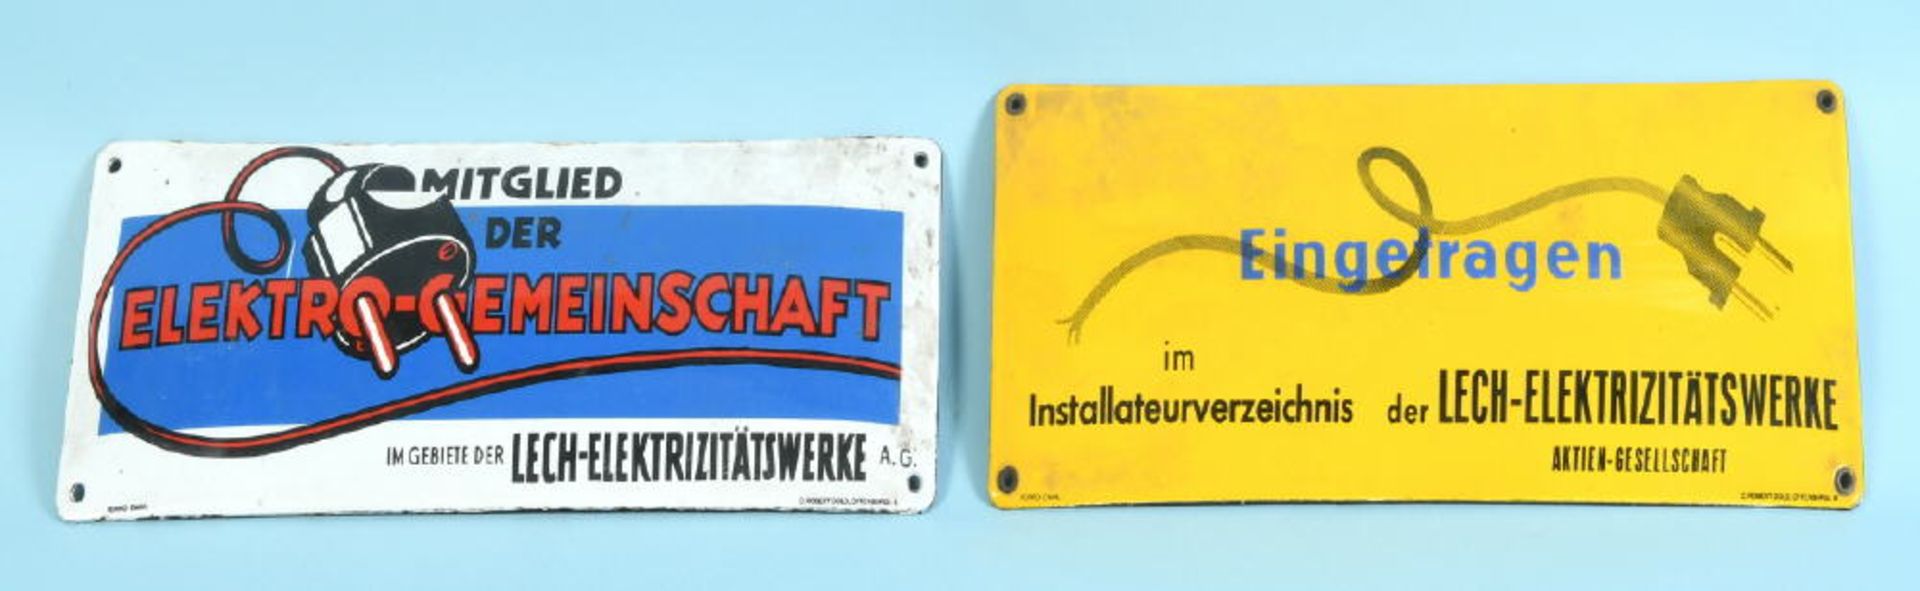 Emaille-Schilder, 2 Stück "Lech-Elektrizitätswerke"